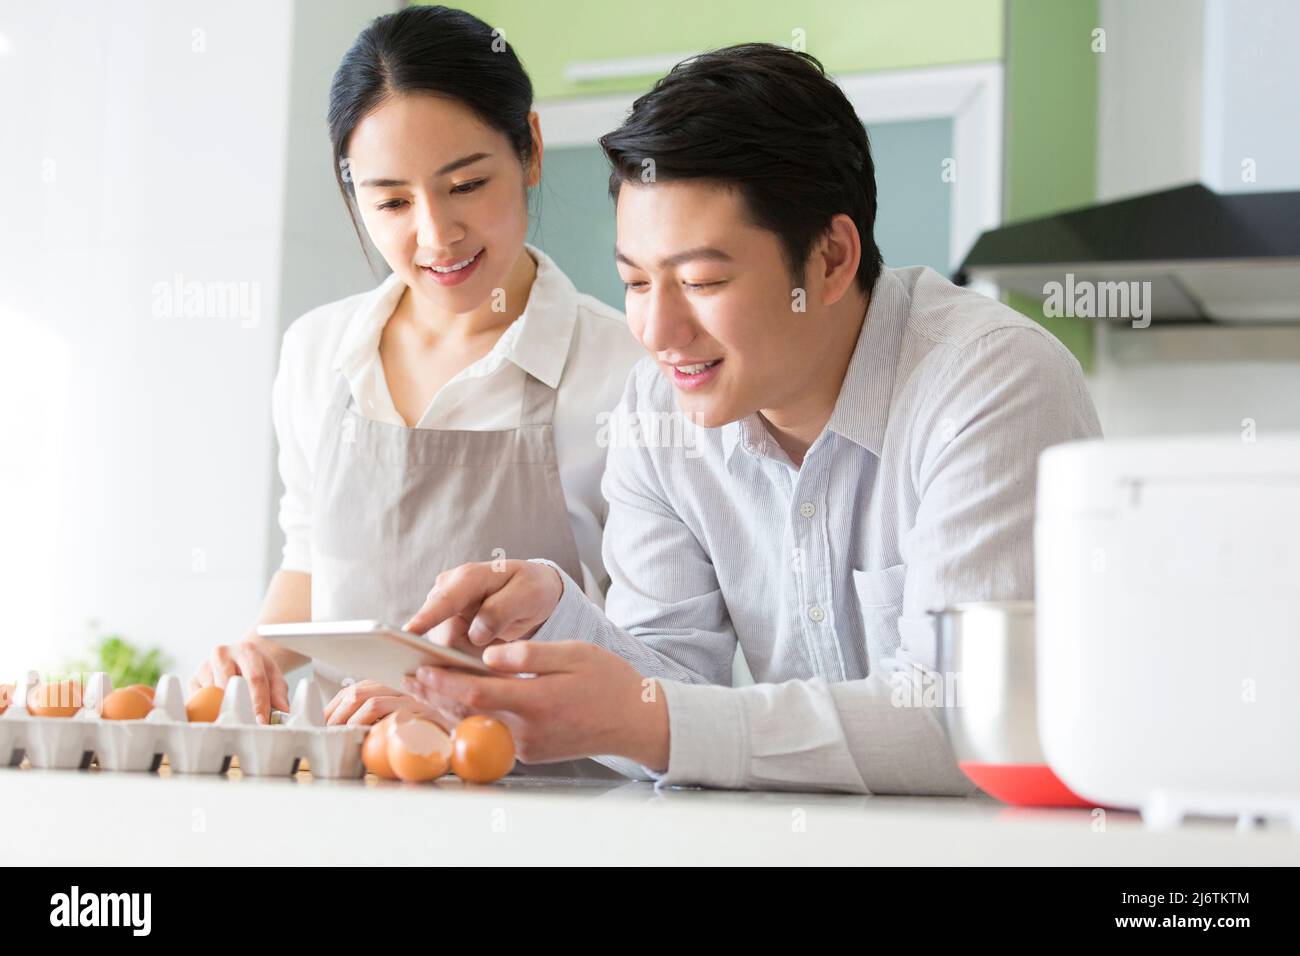 Dans la cuisine familiale, un jeune couple aime cuisiner ensemble. Ils utilisent des tablettes pour regarder la planification financière - photo de stock Banque D'Images